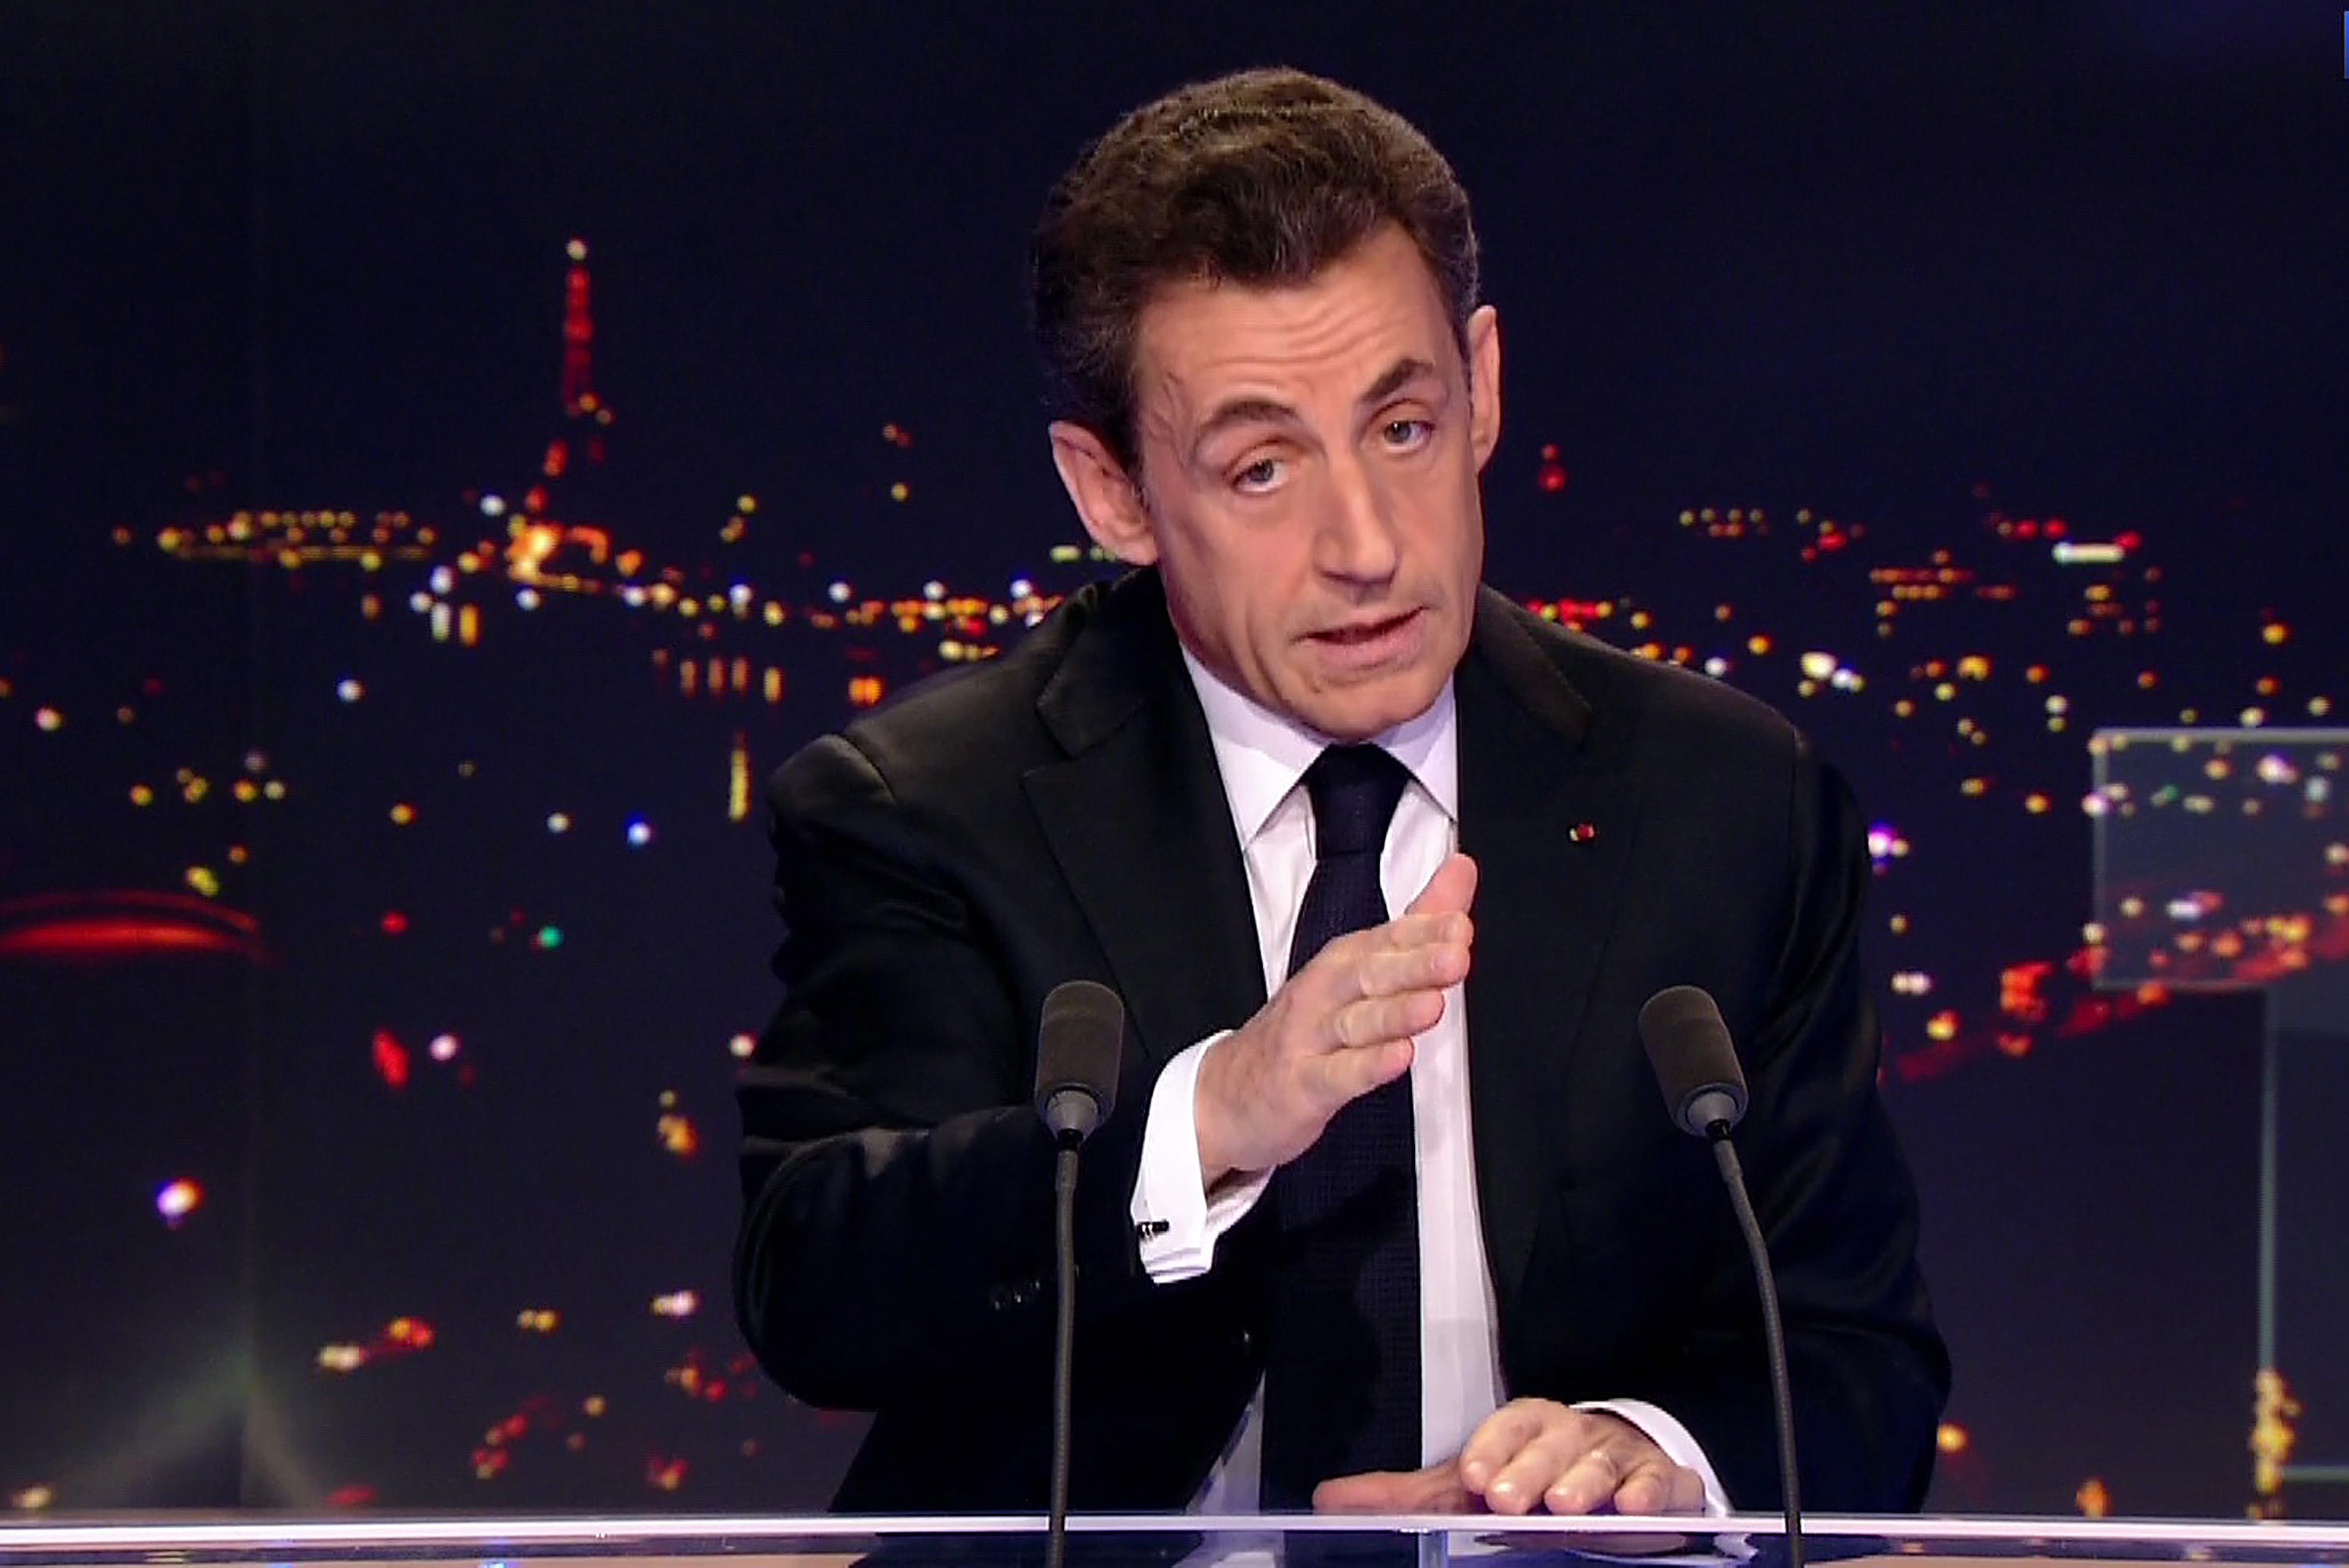 Саркози пак ще се бори за президент, опонентът му социалист води